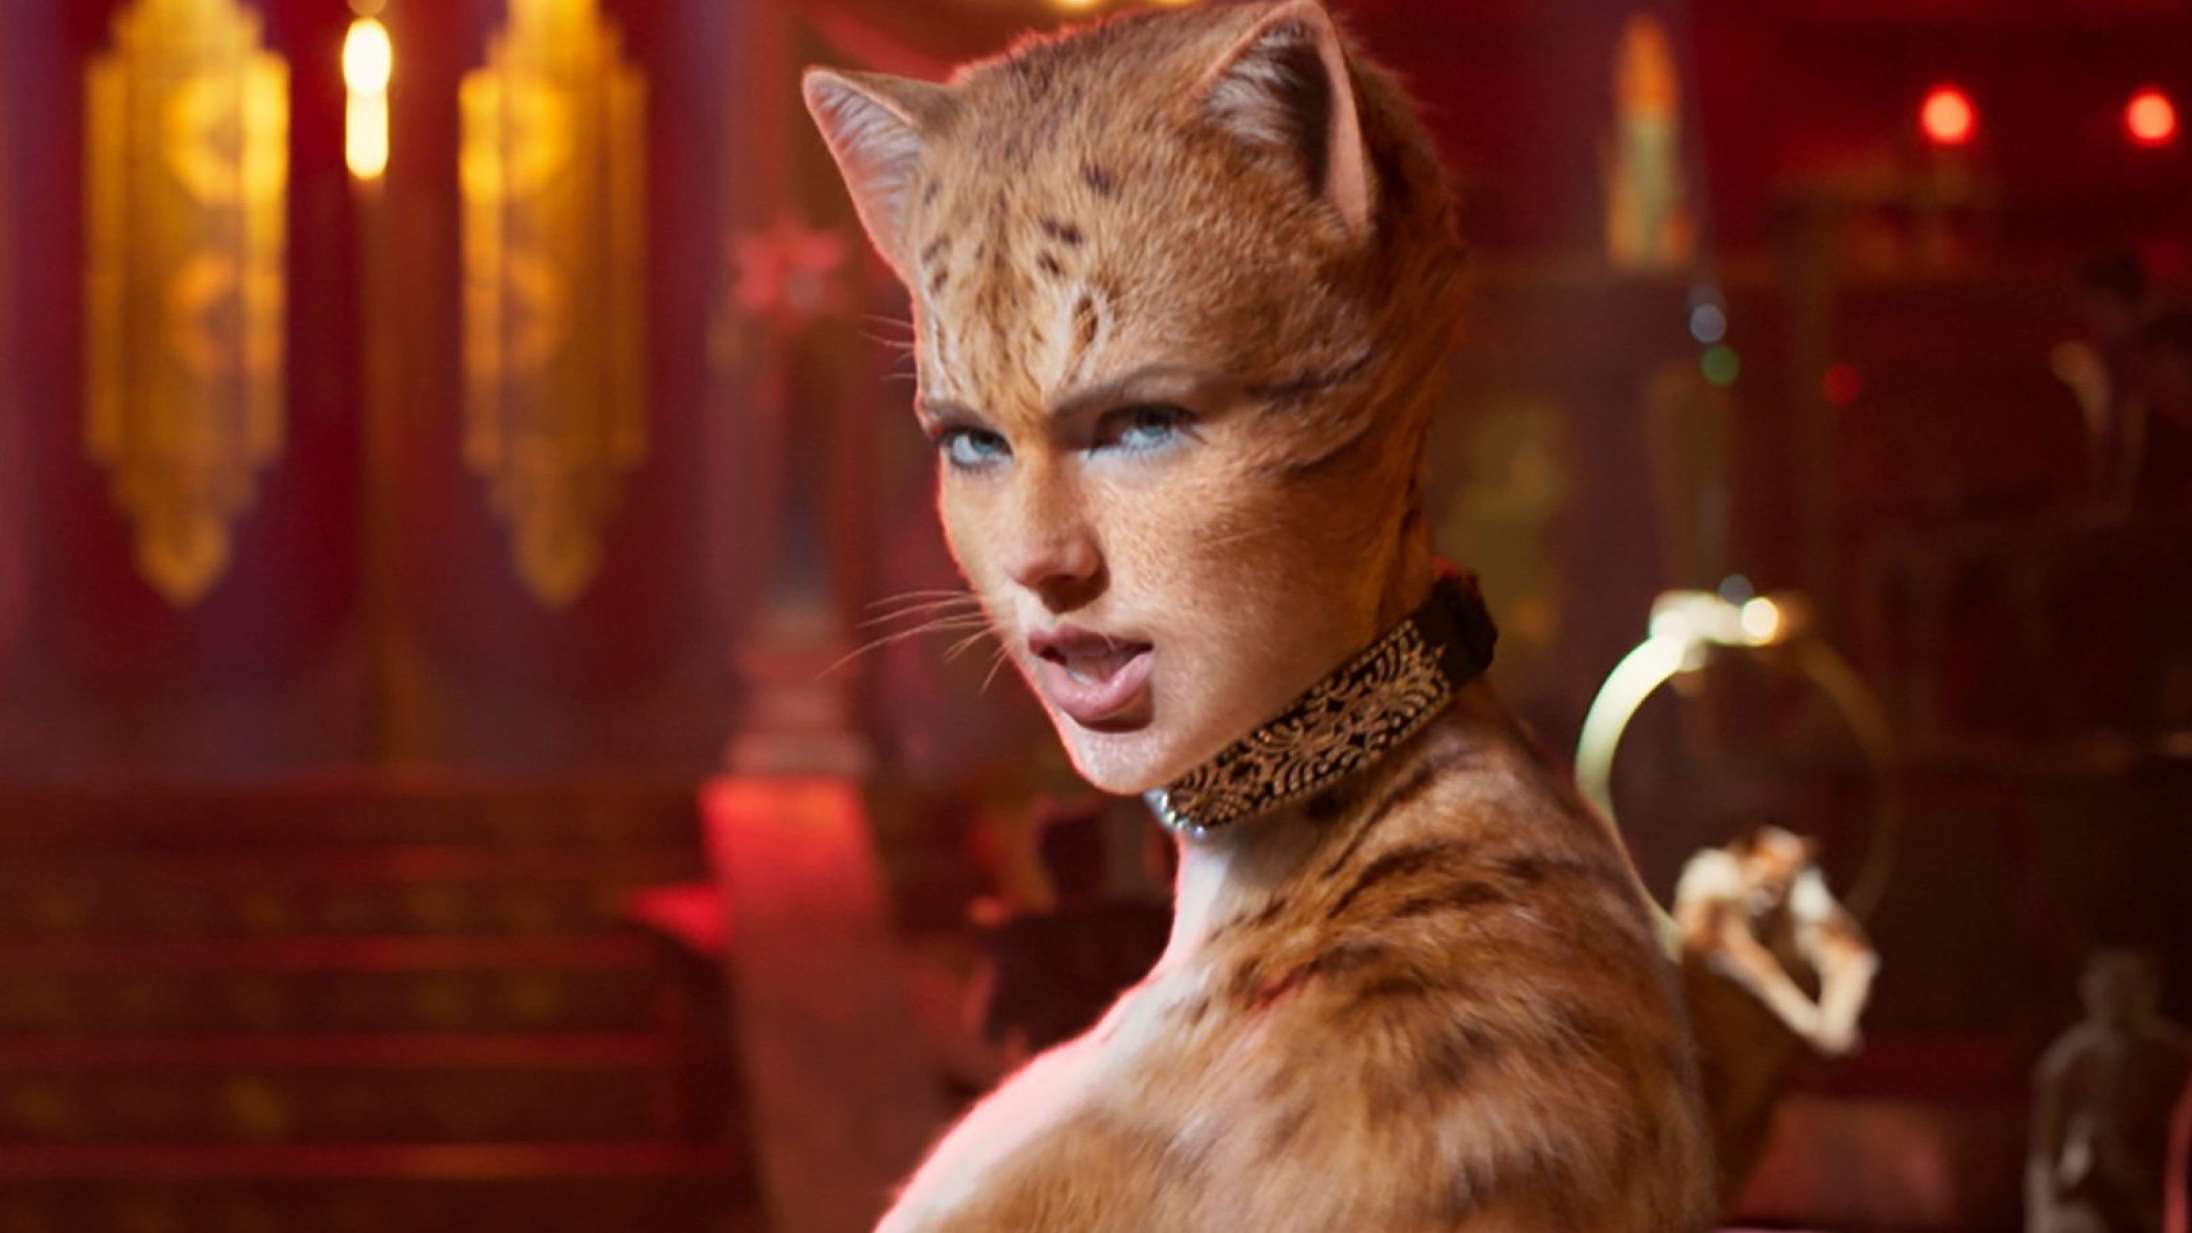 Ny version af ’Cats’ med »forbedrede visuelle effekter« på vej til biograferne efter katastrofal premiere